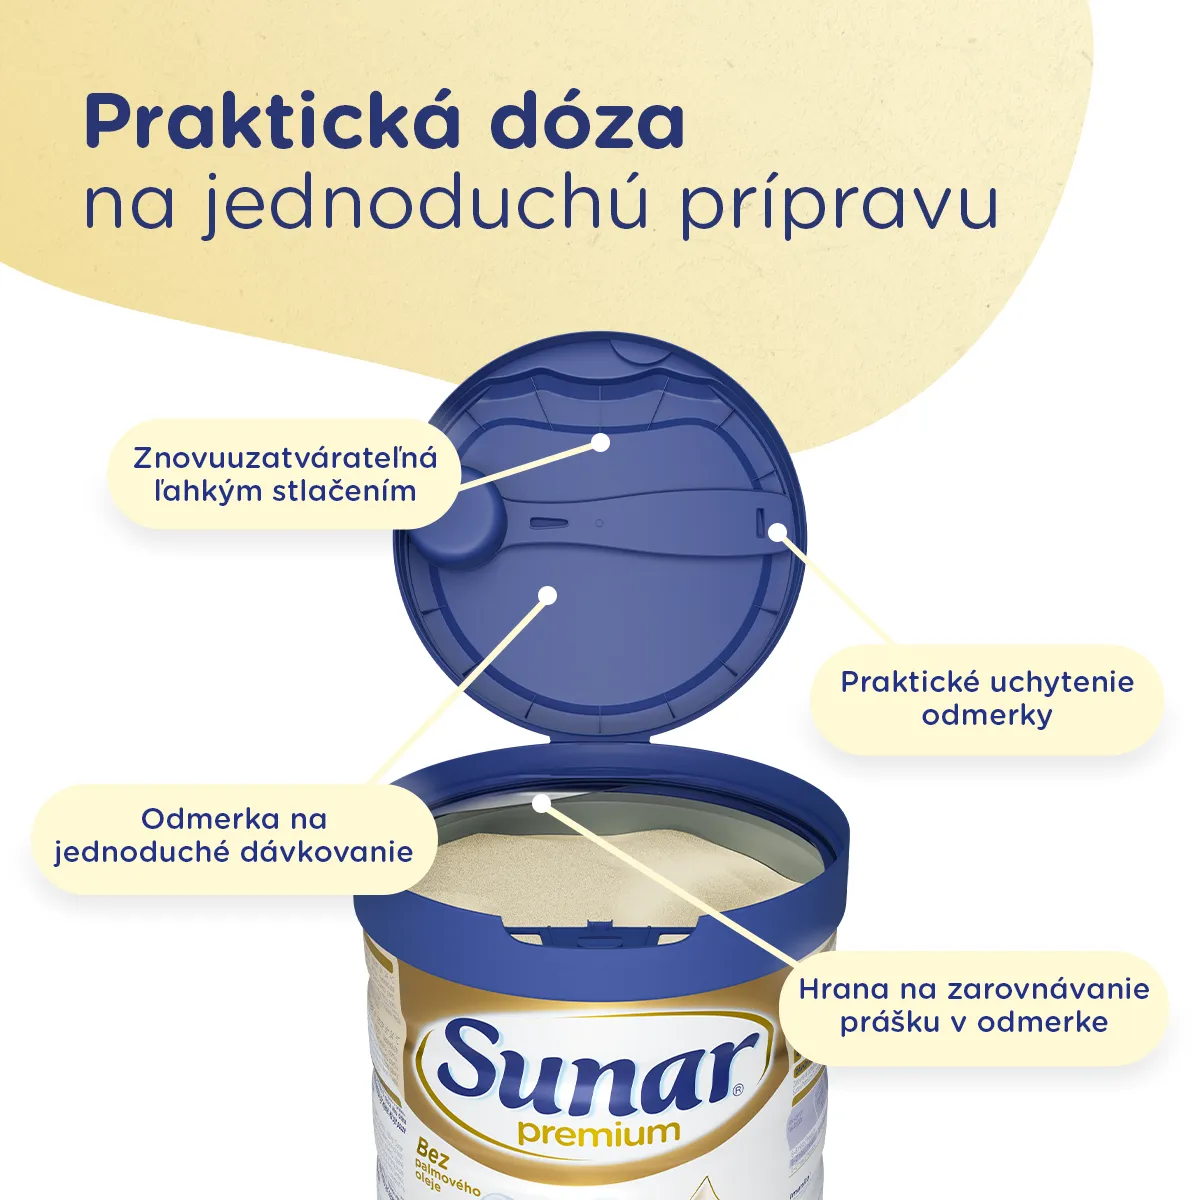 Sunar Premium 2 1×700 g, dojčenské mlieko, od 6. mesiaca